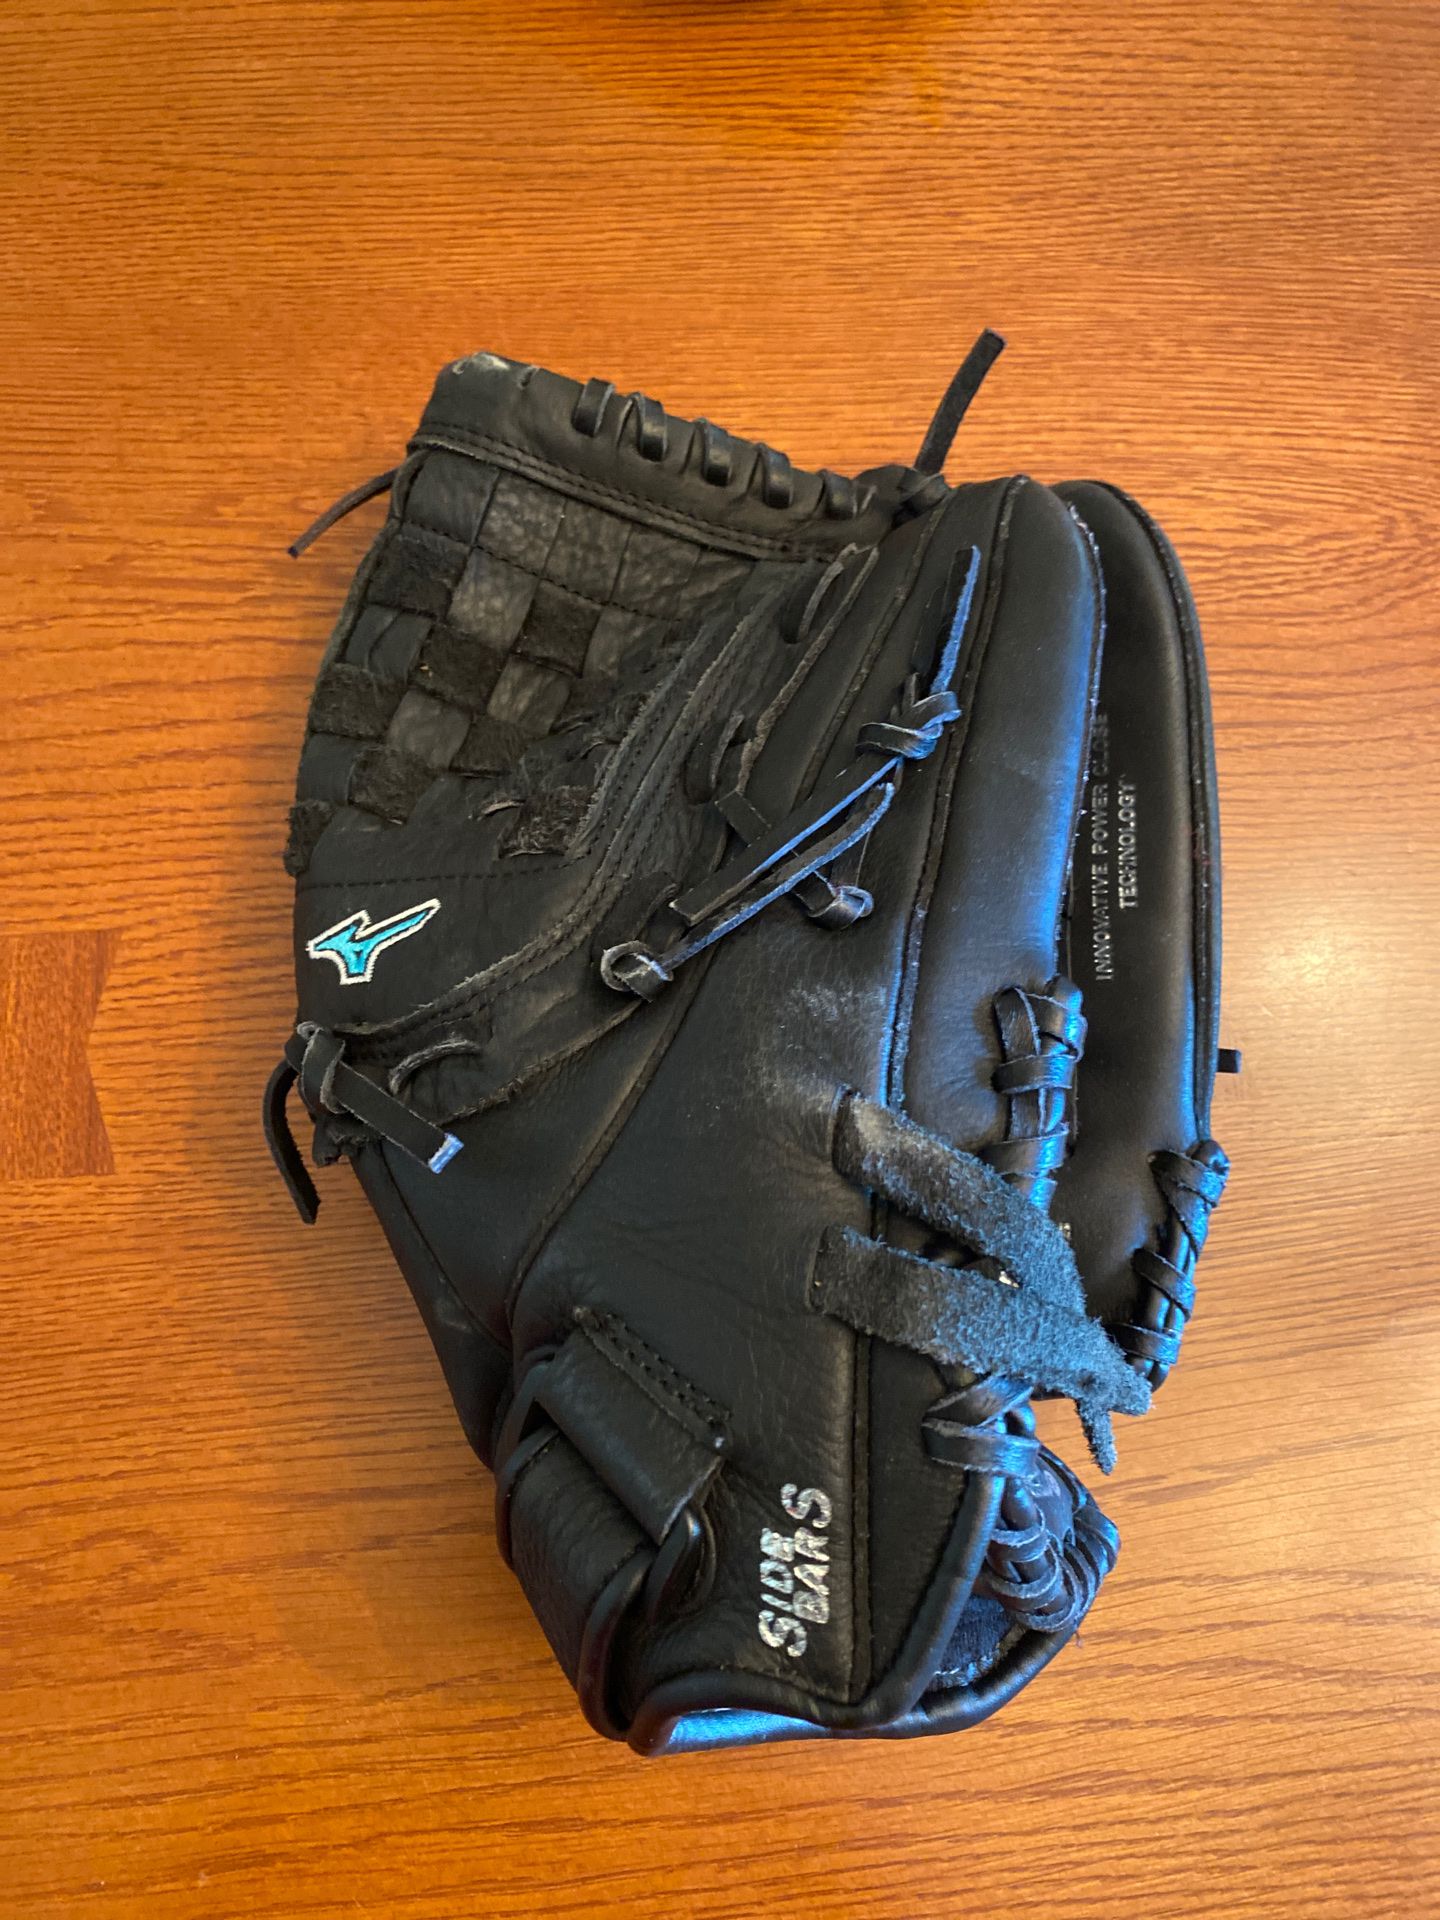 Mizuno girl’s softball glove